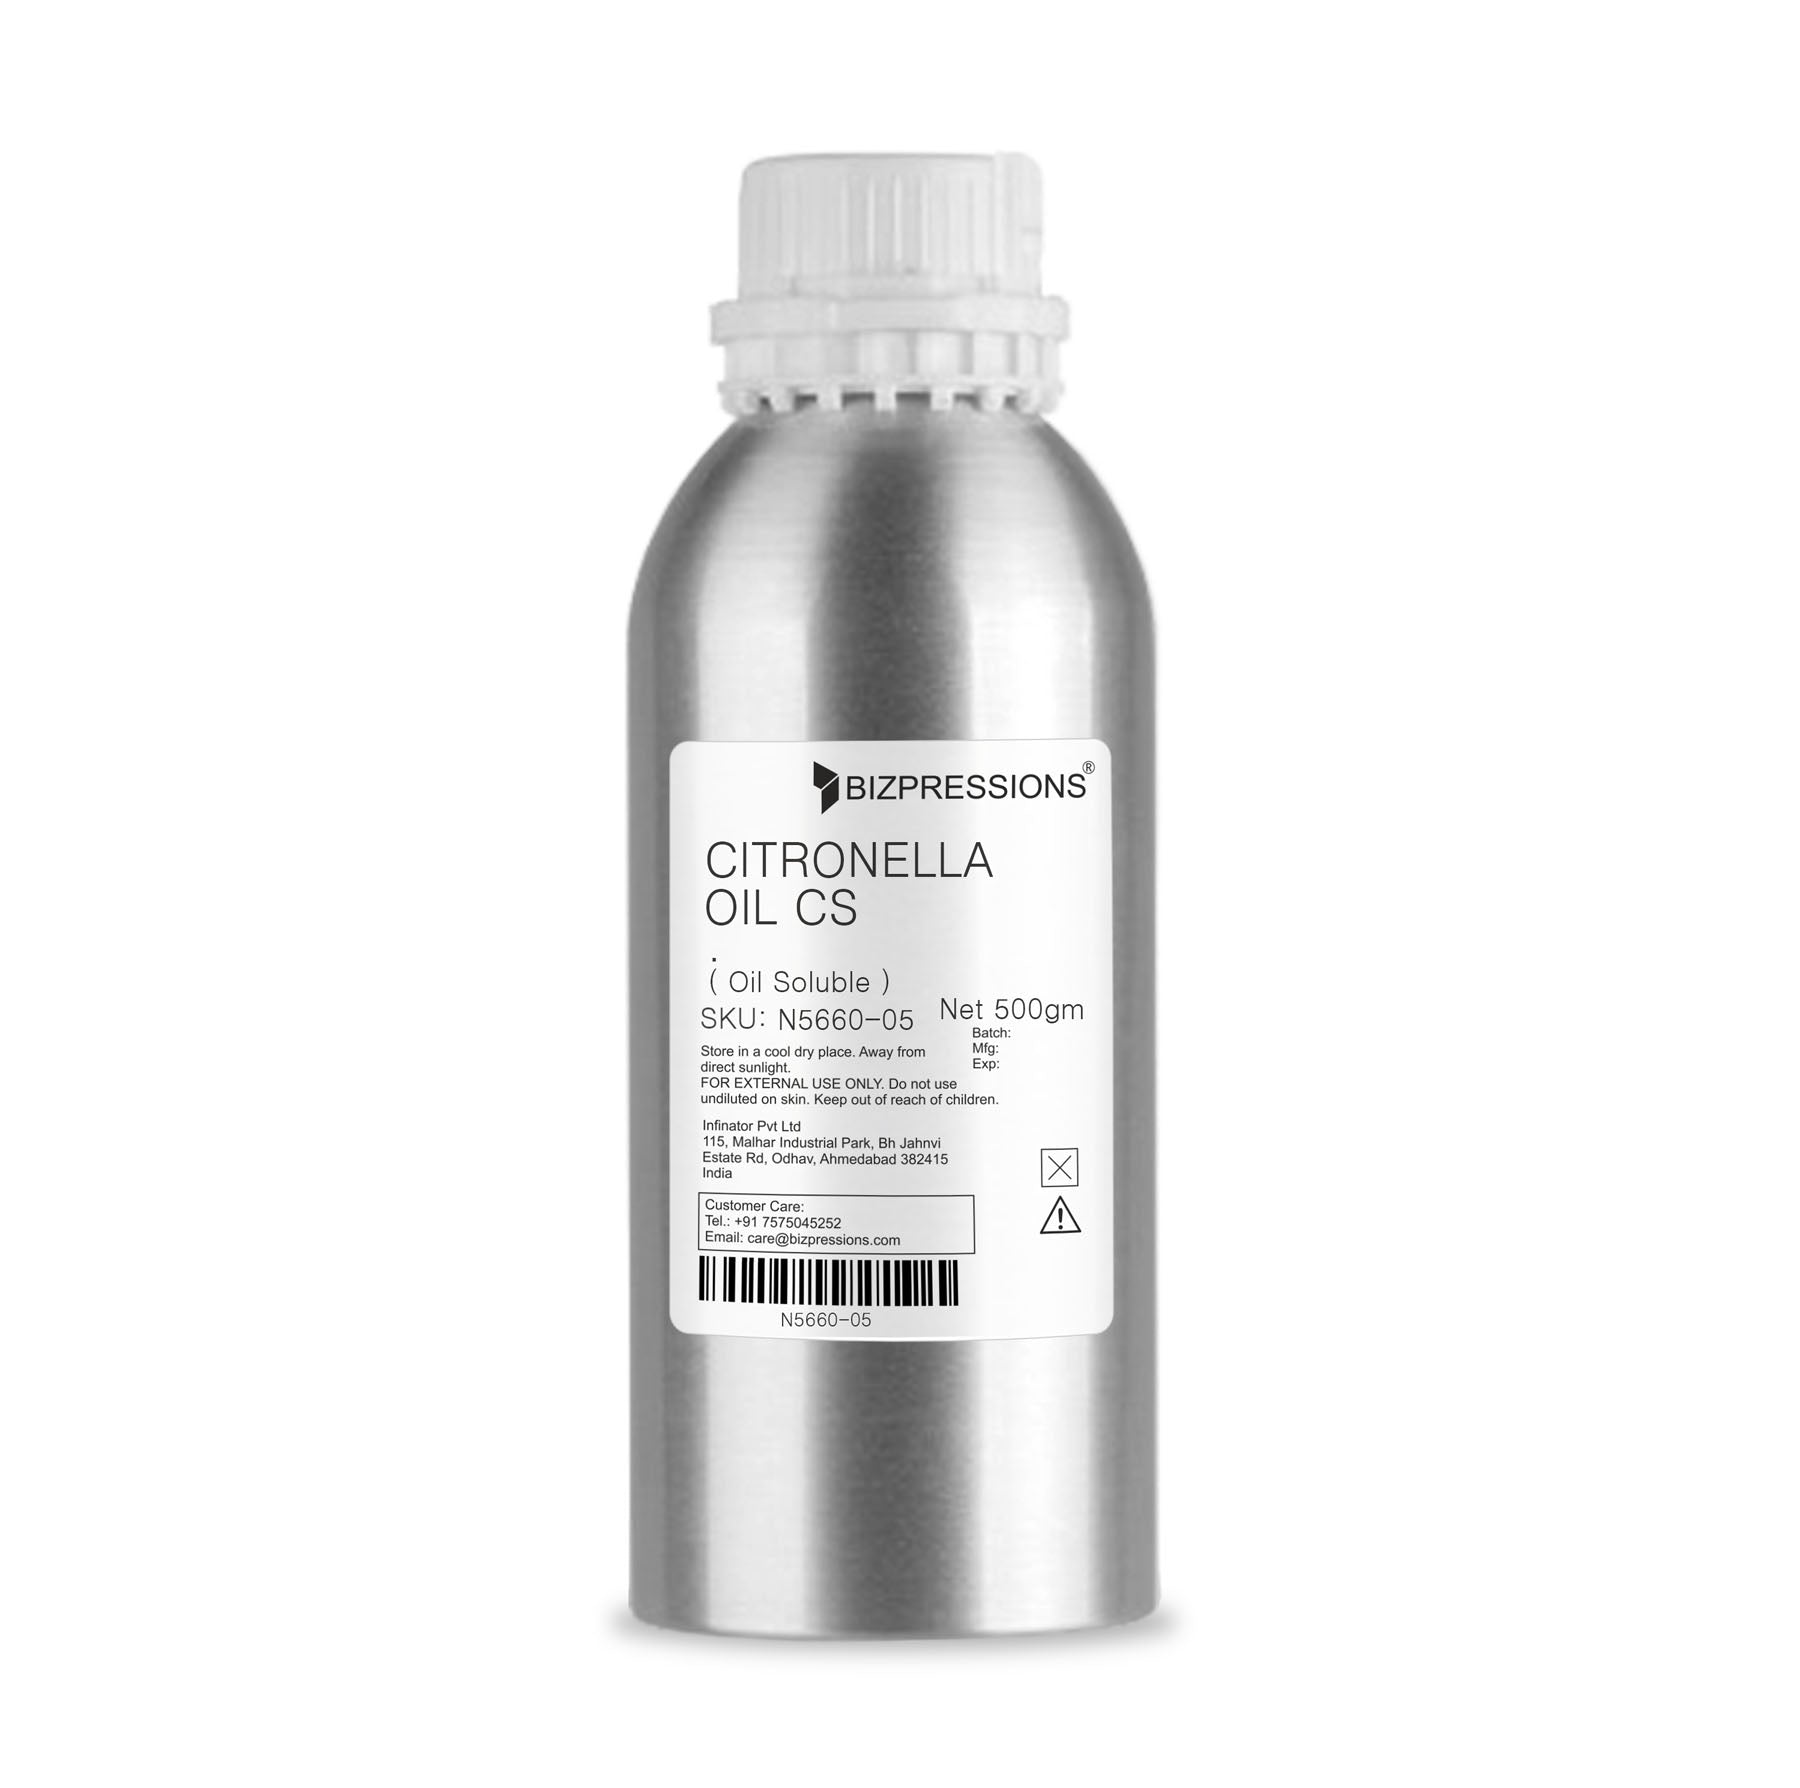 CITRONELLA OIL CS - Fragrance ( Oil Soluble ) - 500 gm